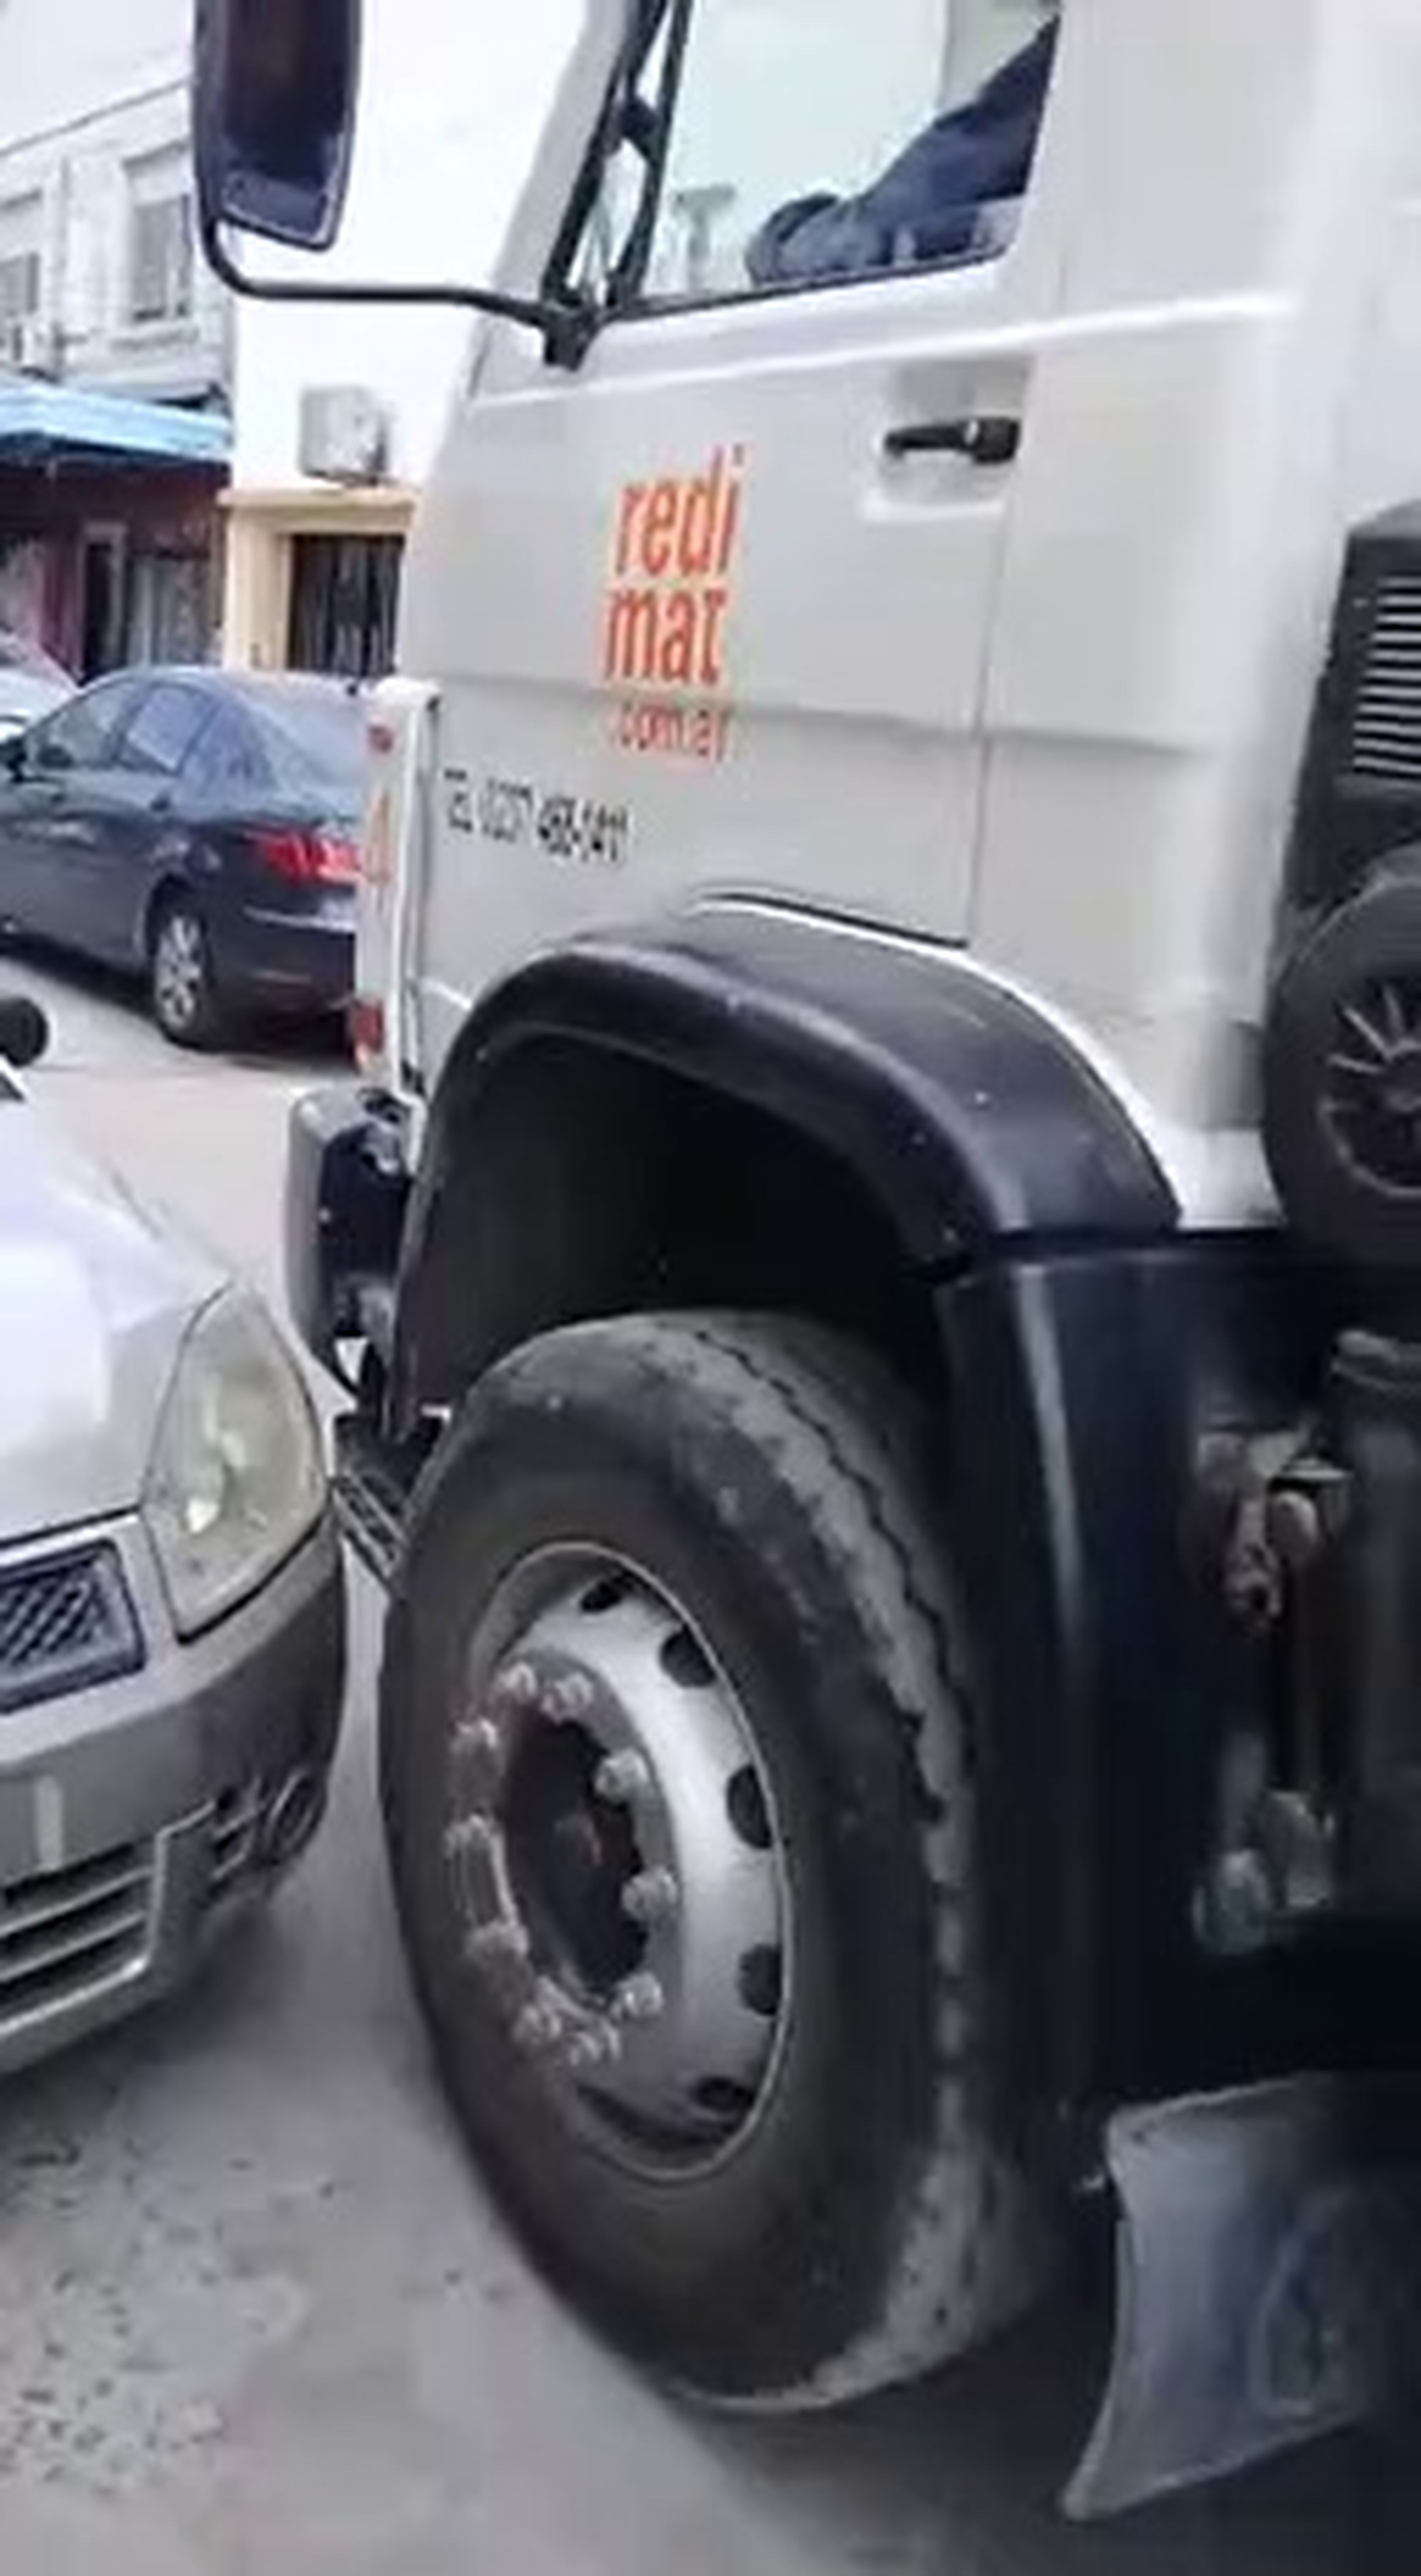 VÍDEO: Un camionero destroza sin piedad un coche mal aparcado